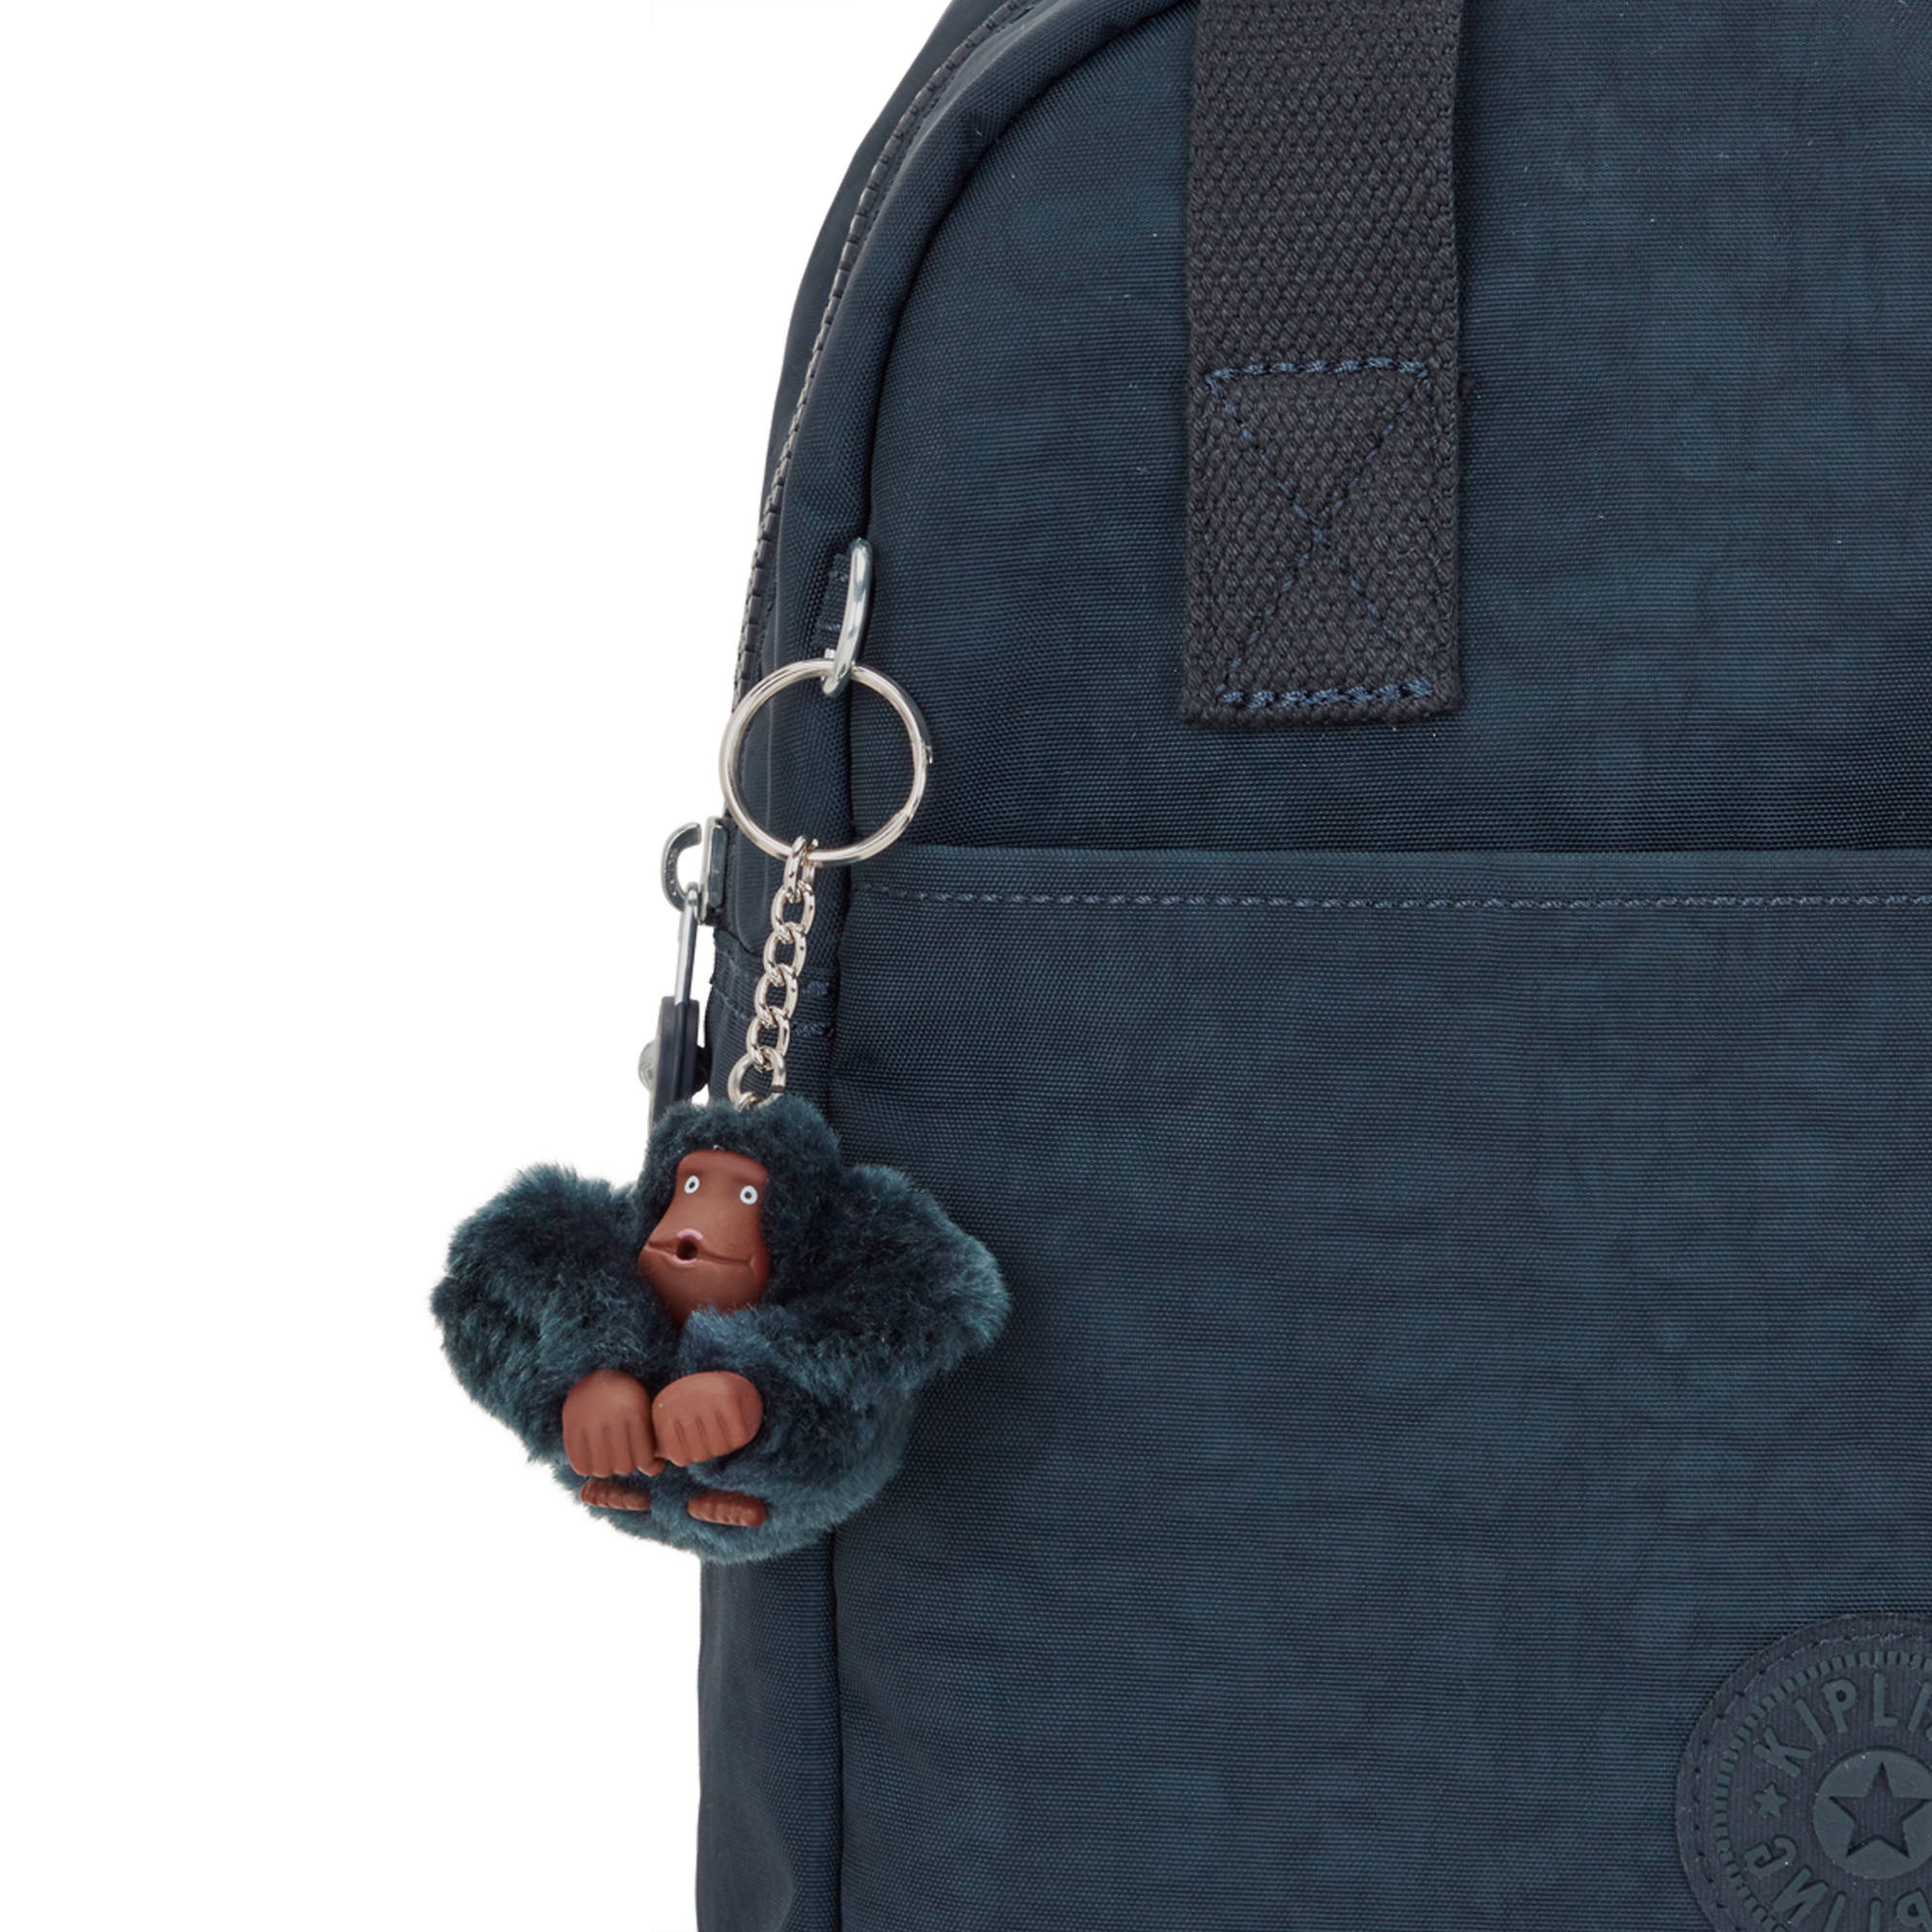 Kipling Siva Backpack | eBay